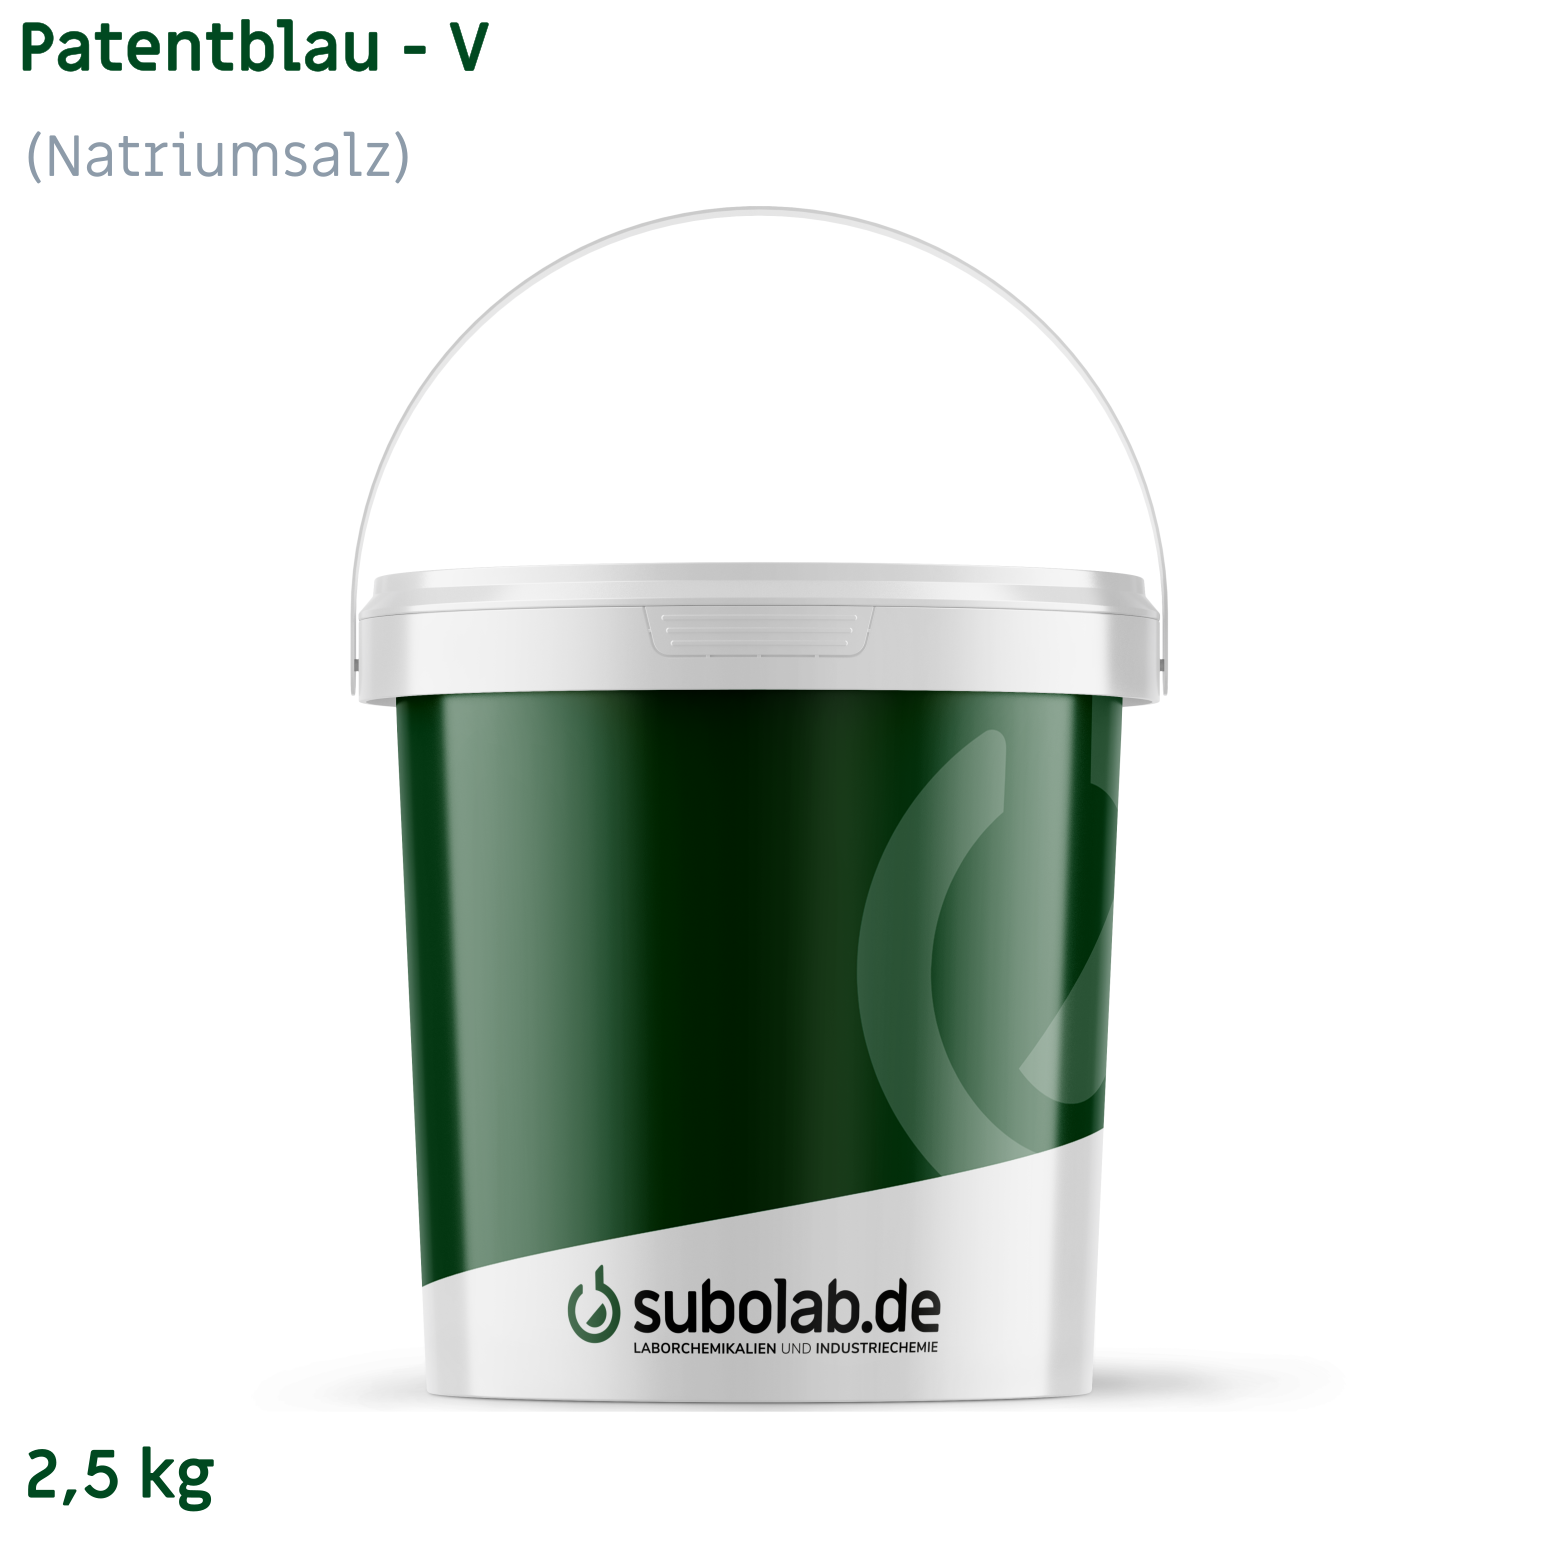 Bild von Patentblau - V (Natriumsalz) (2,5 kg)